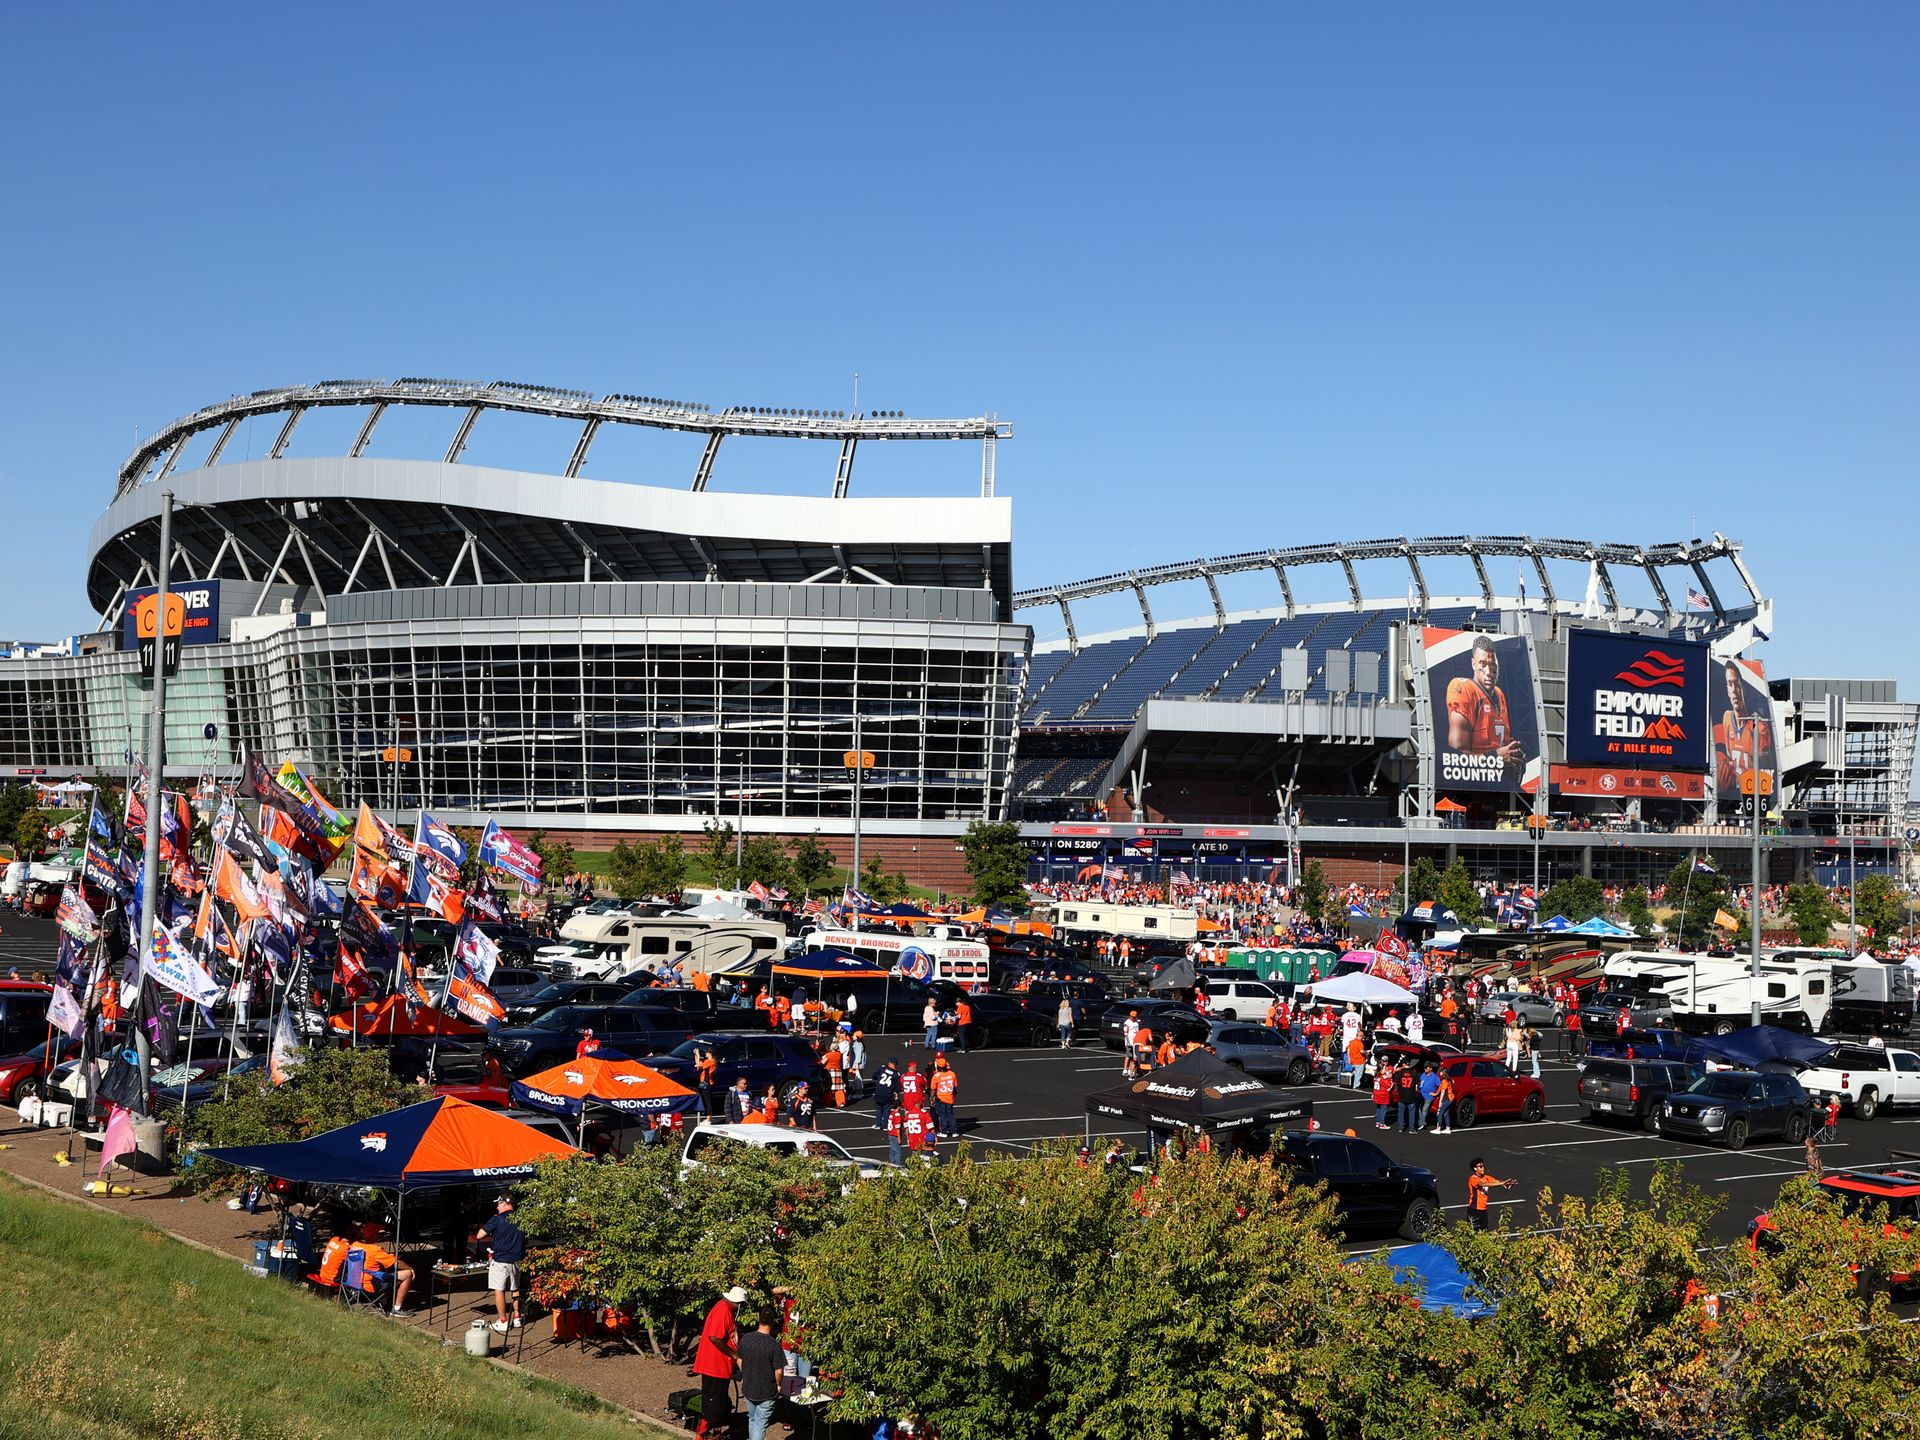 Denver Broncos Stadium at Mile High gets new name